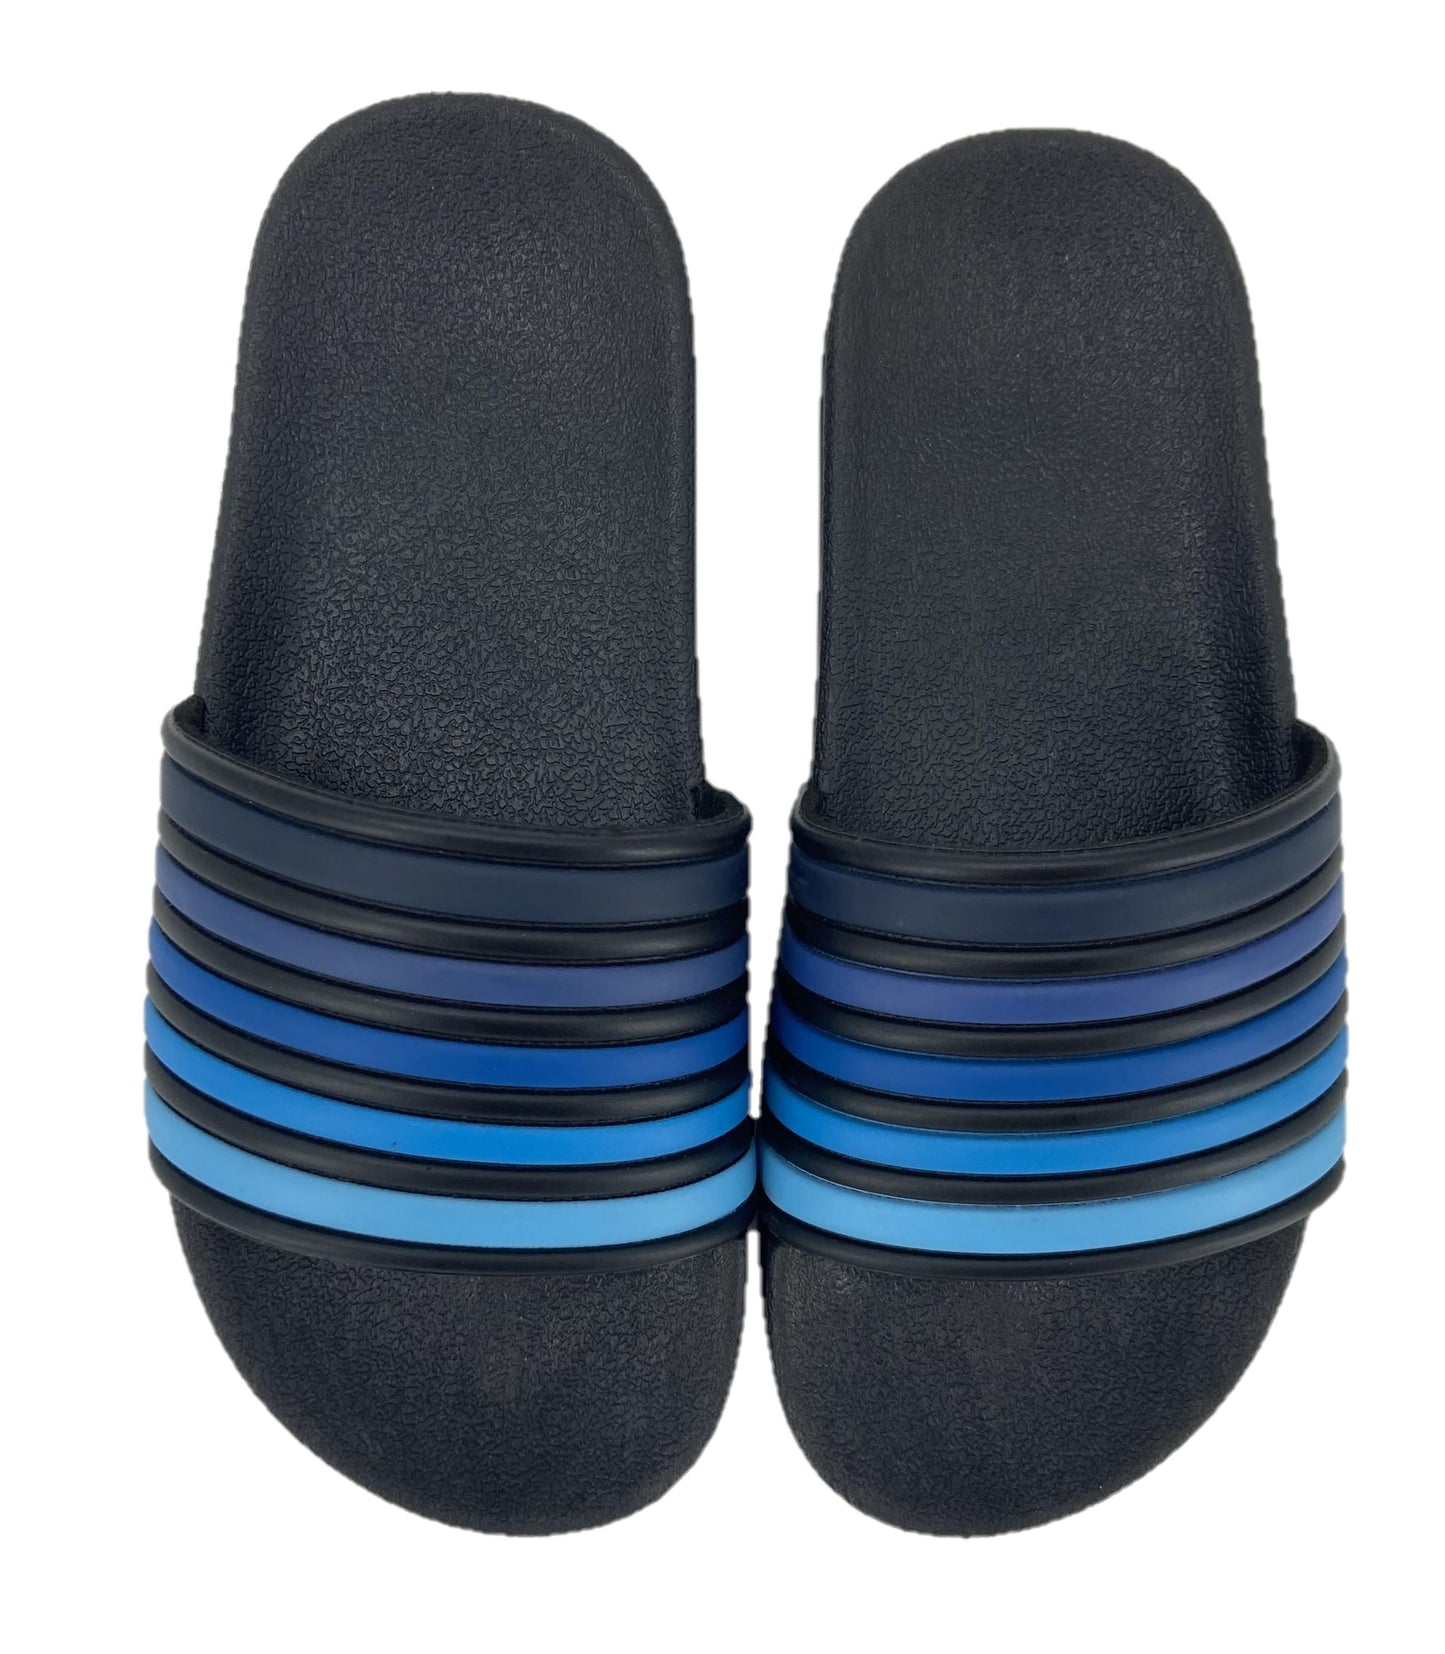 Boys Black & White Striped Pool Sliders Beach Sandals Flip Flops - UK 9-10 Child